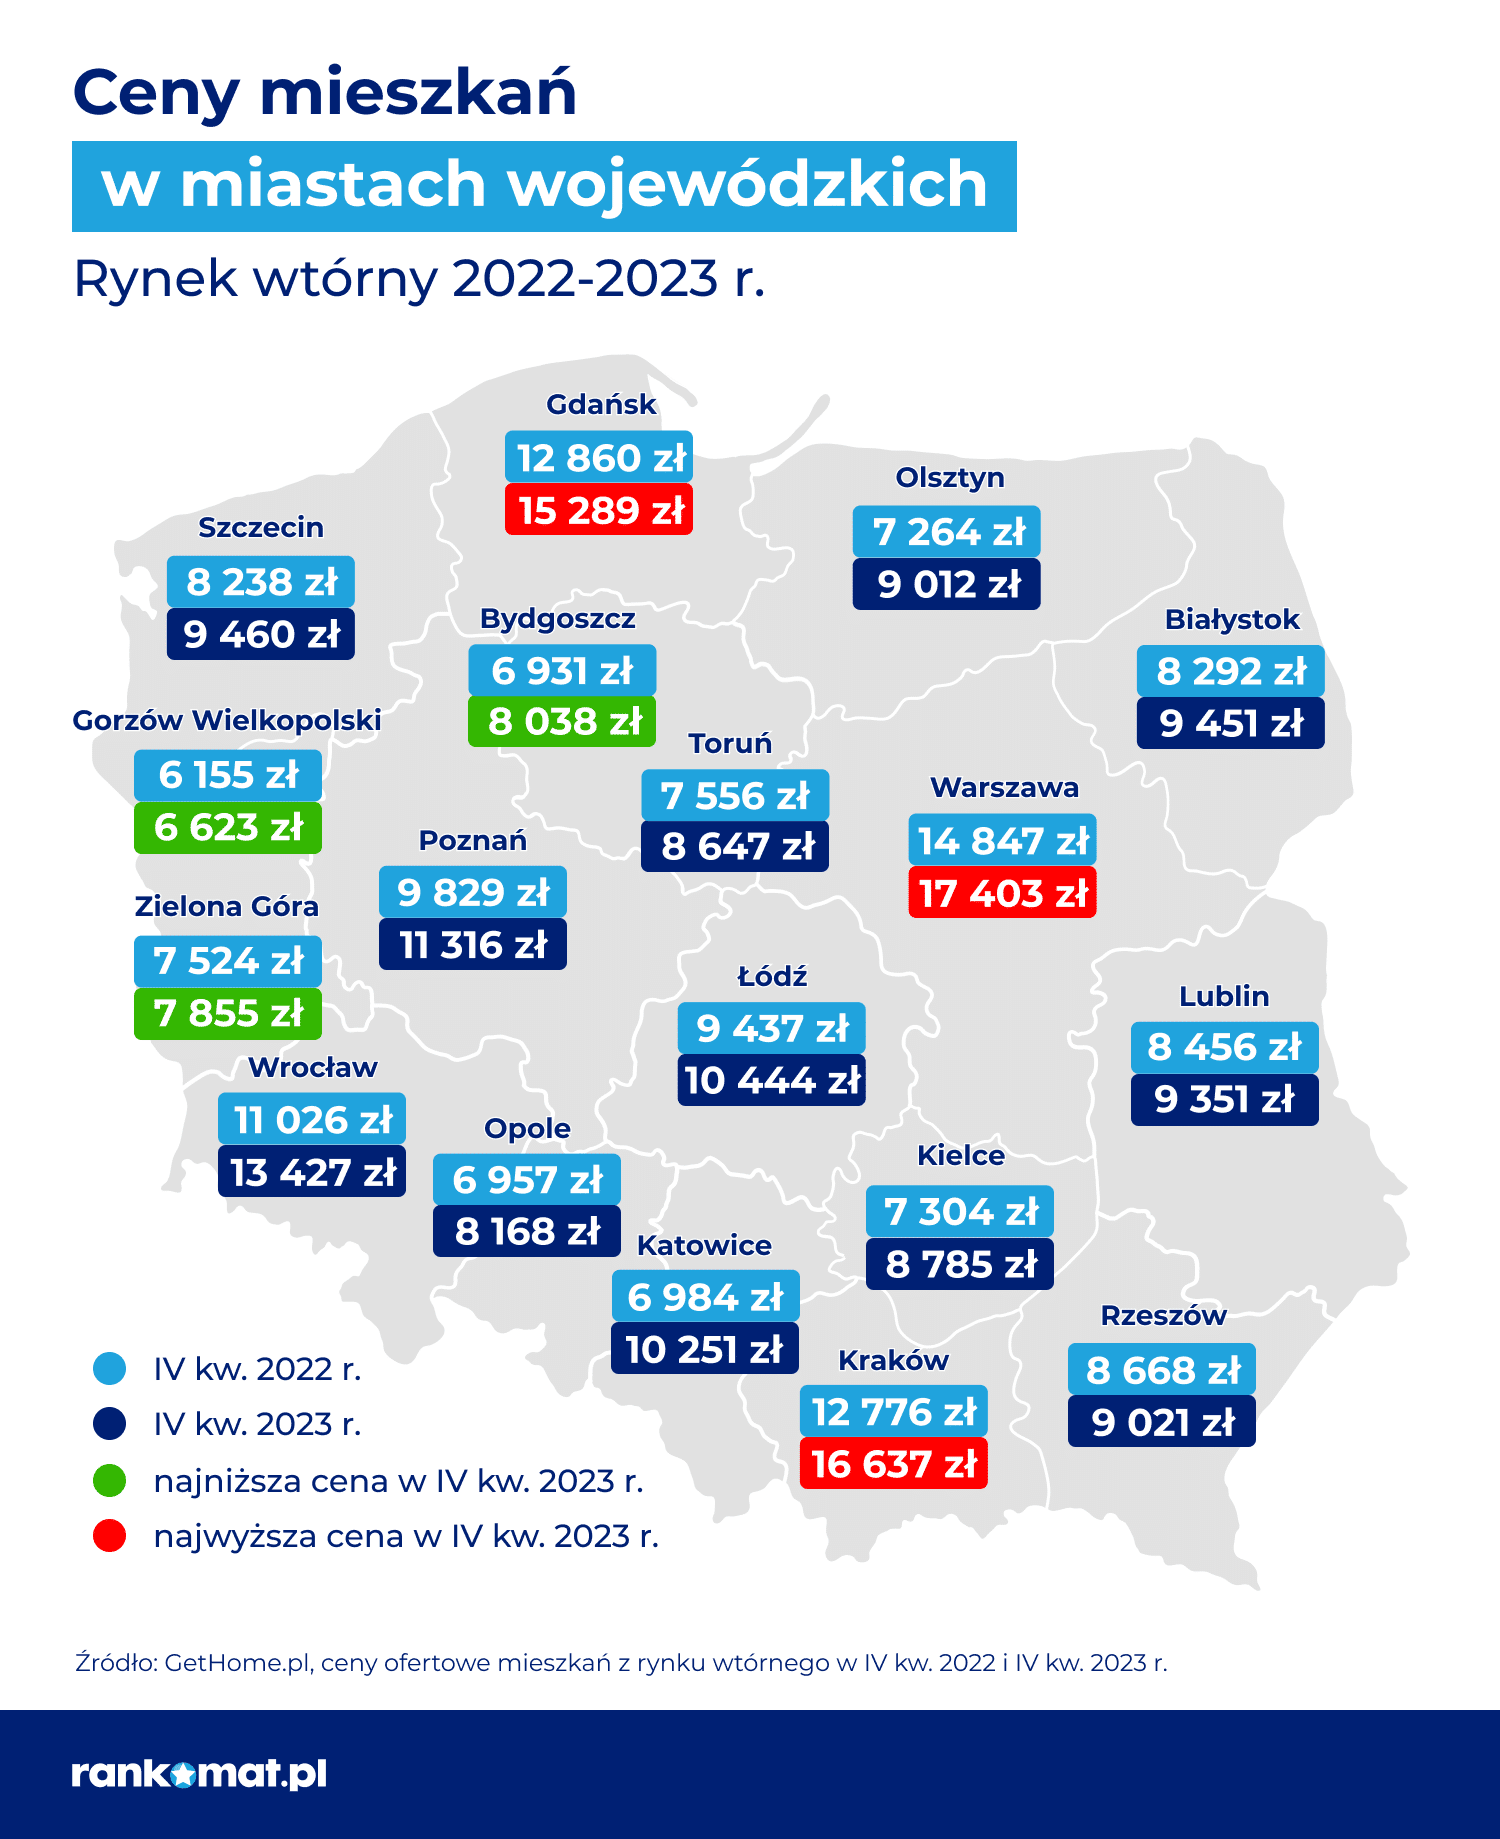 Ceny mieszkań – rynek wtórny_rankomat.pl